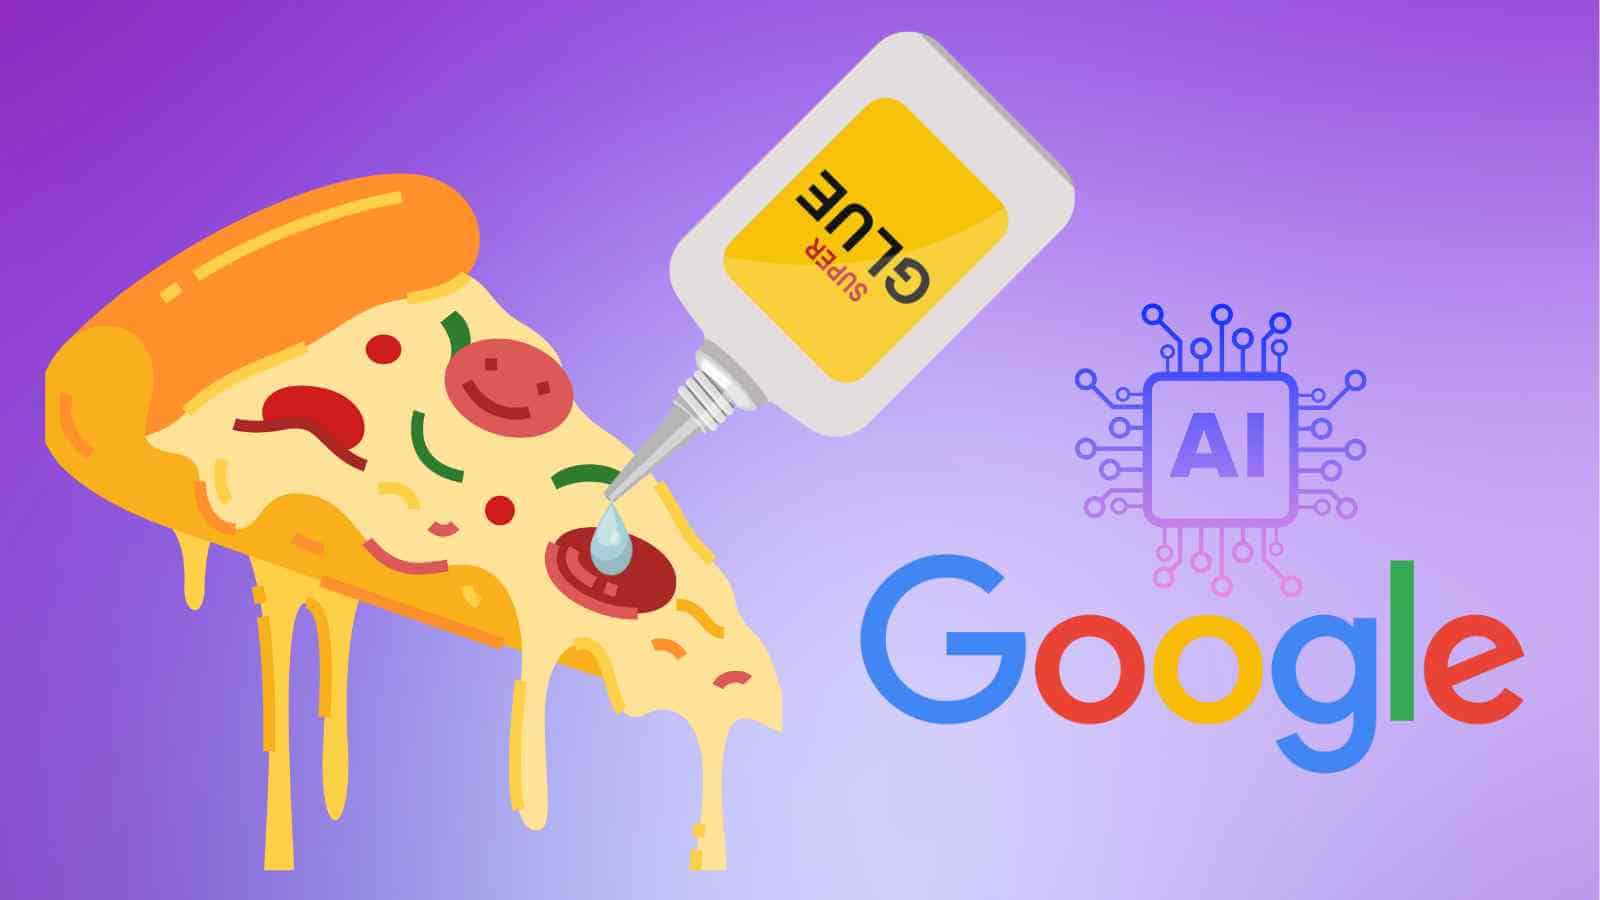 L'IA di Google continua a proporre la sua originale, quanto micidiale, versione della pizza con colla, nonostante le critiche degli utenti.